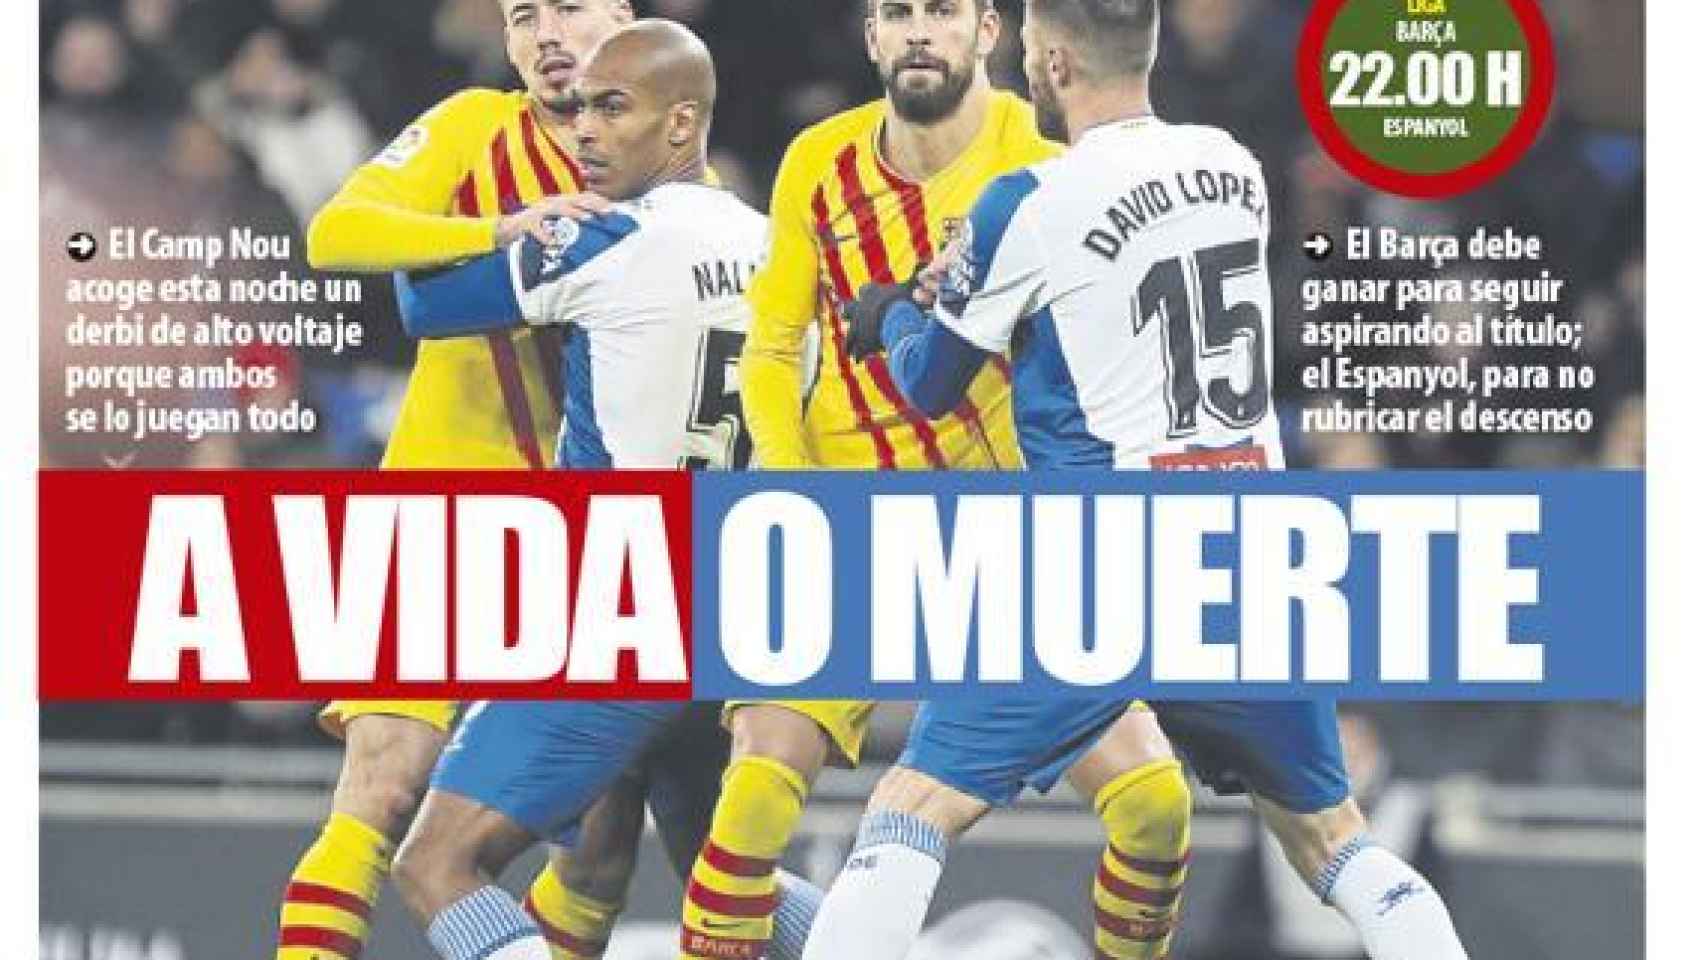 Portada Mundo Deportivo (08/07/20)